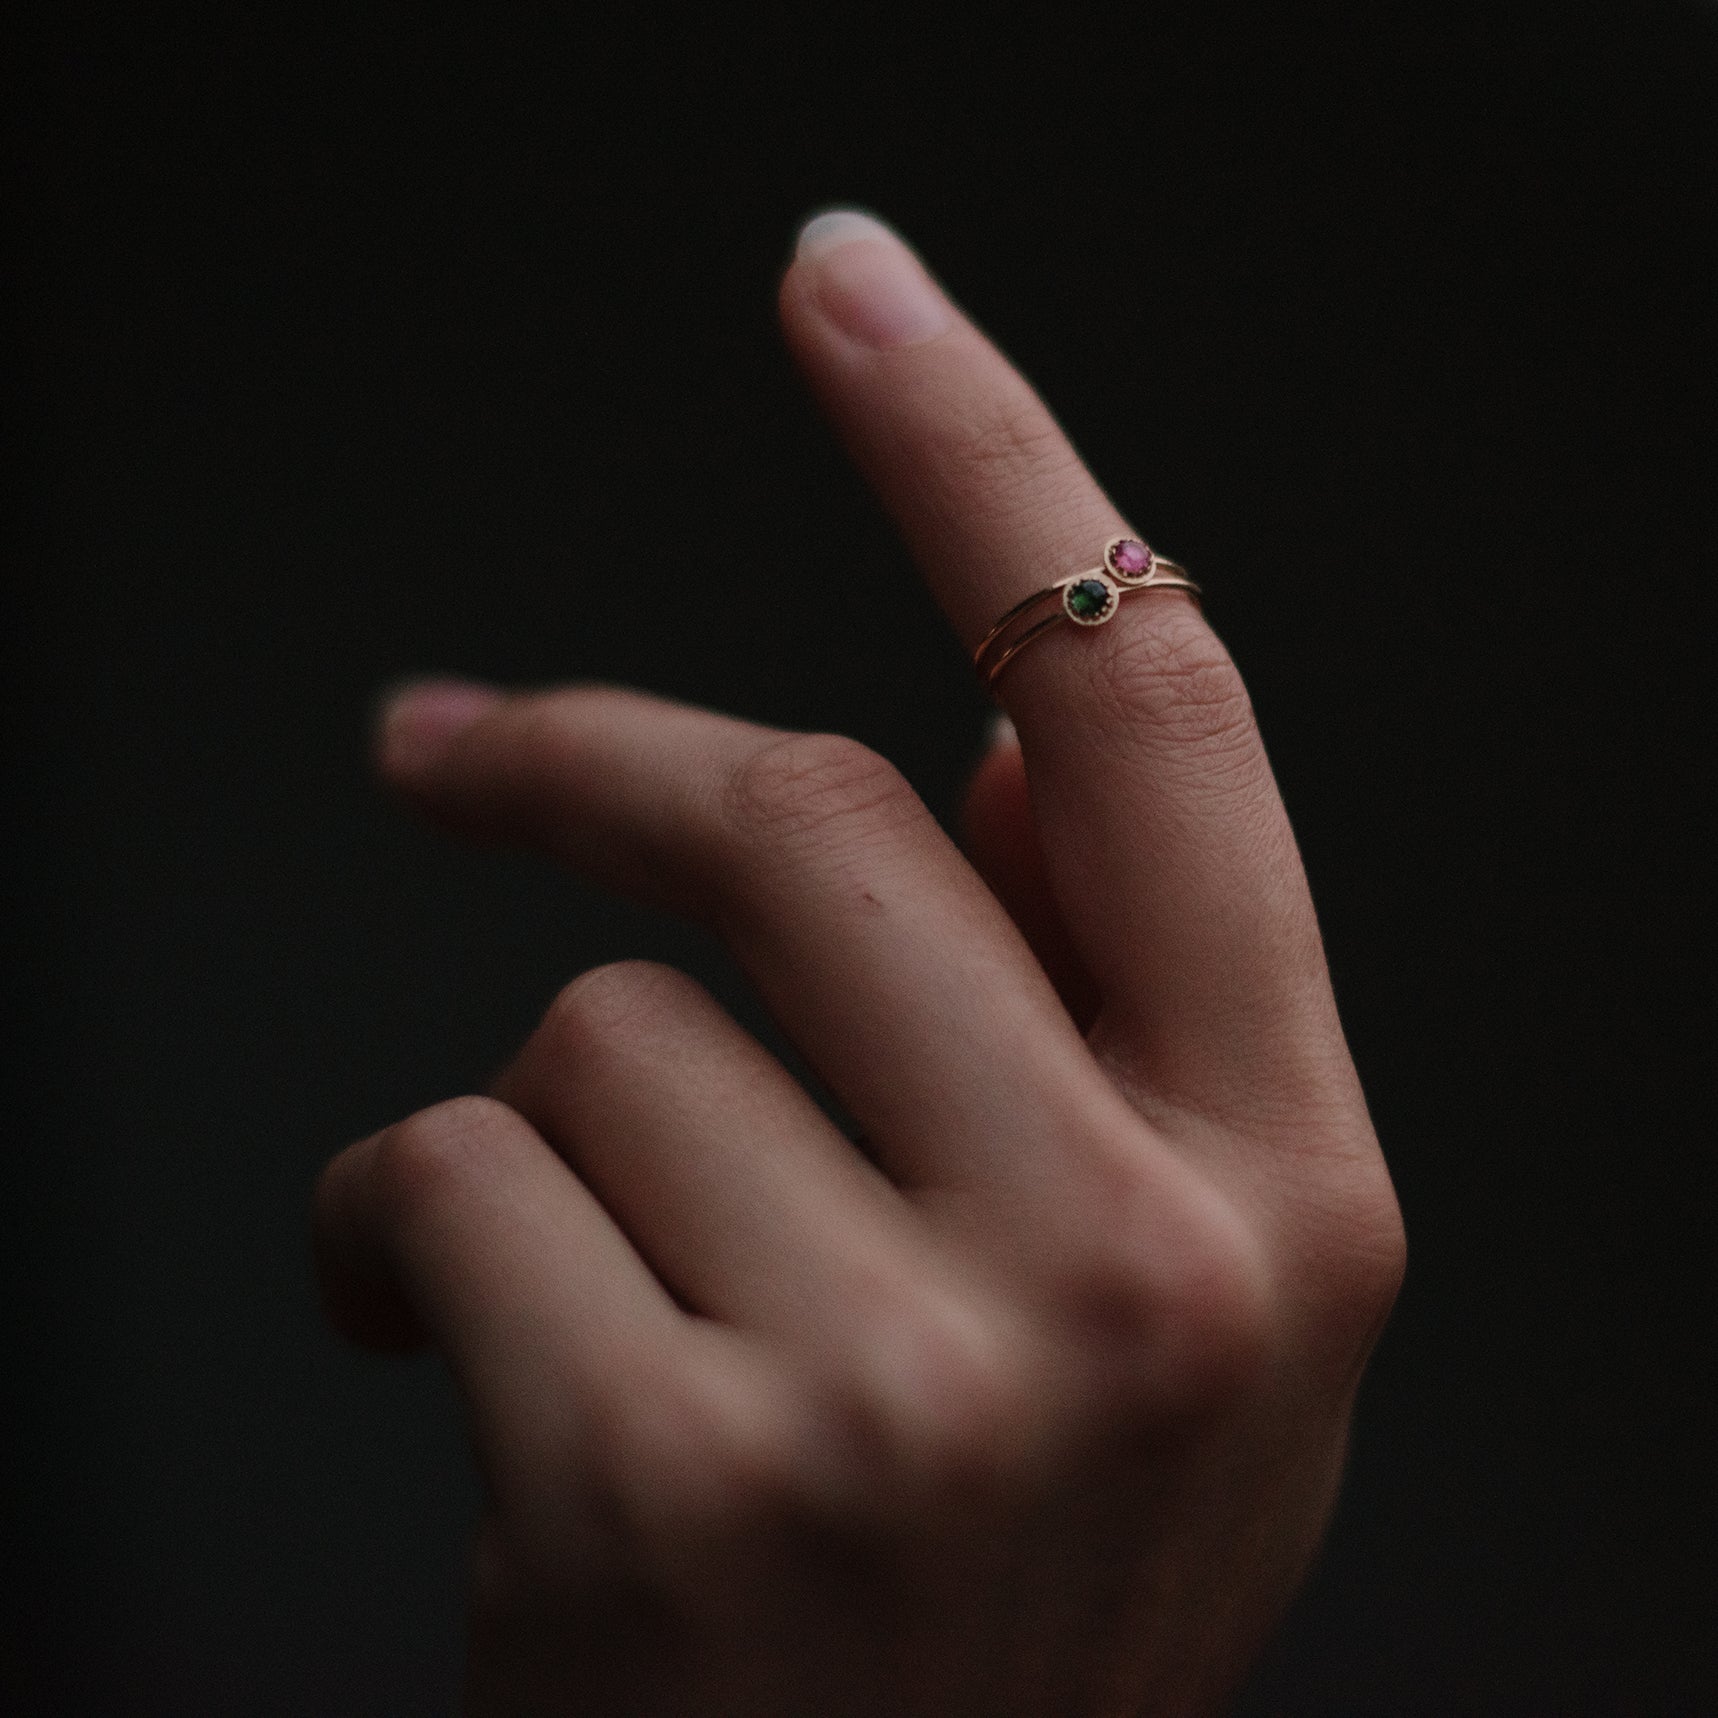 Der vergoldete Ring UTOPIA besteht aus einem recycelten Turmalin-Edelstein der Farbe Grün